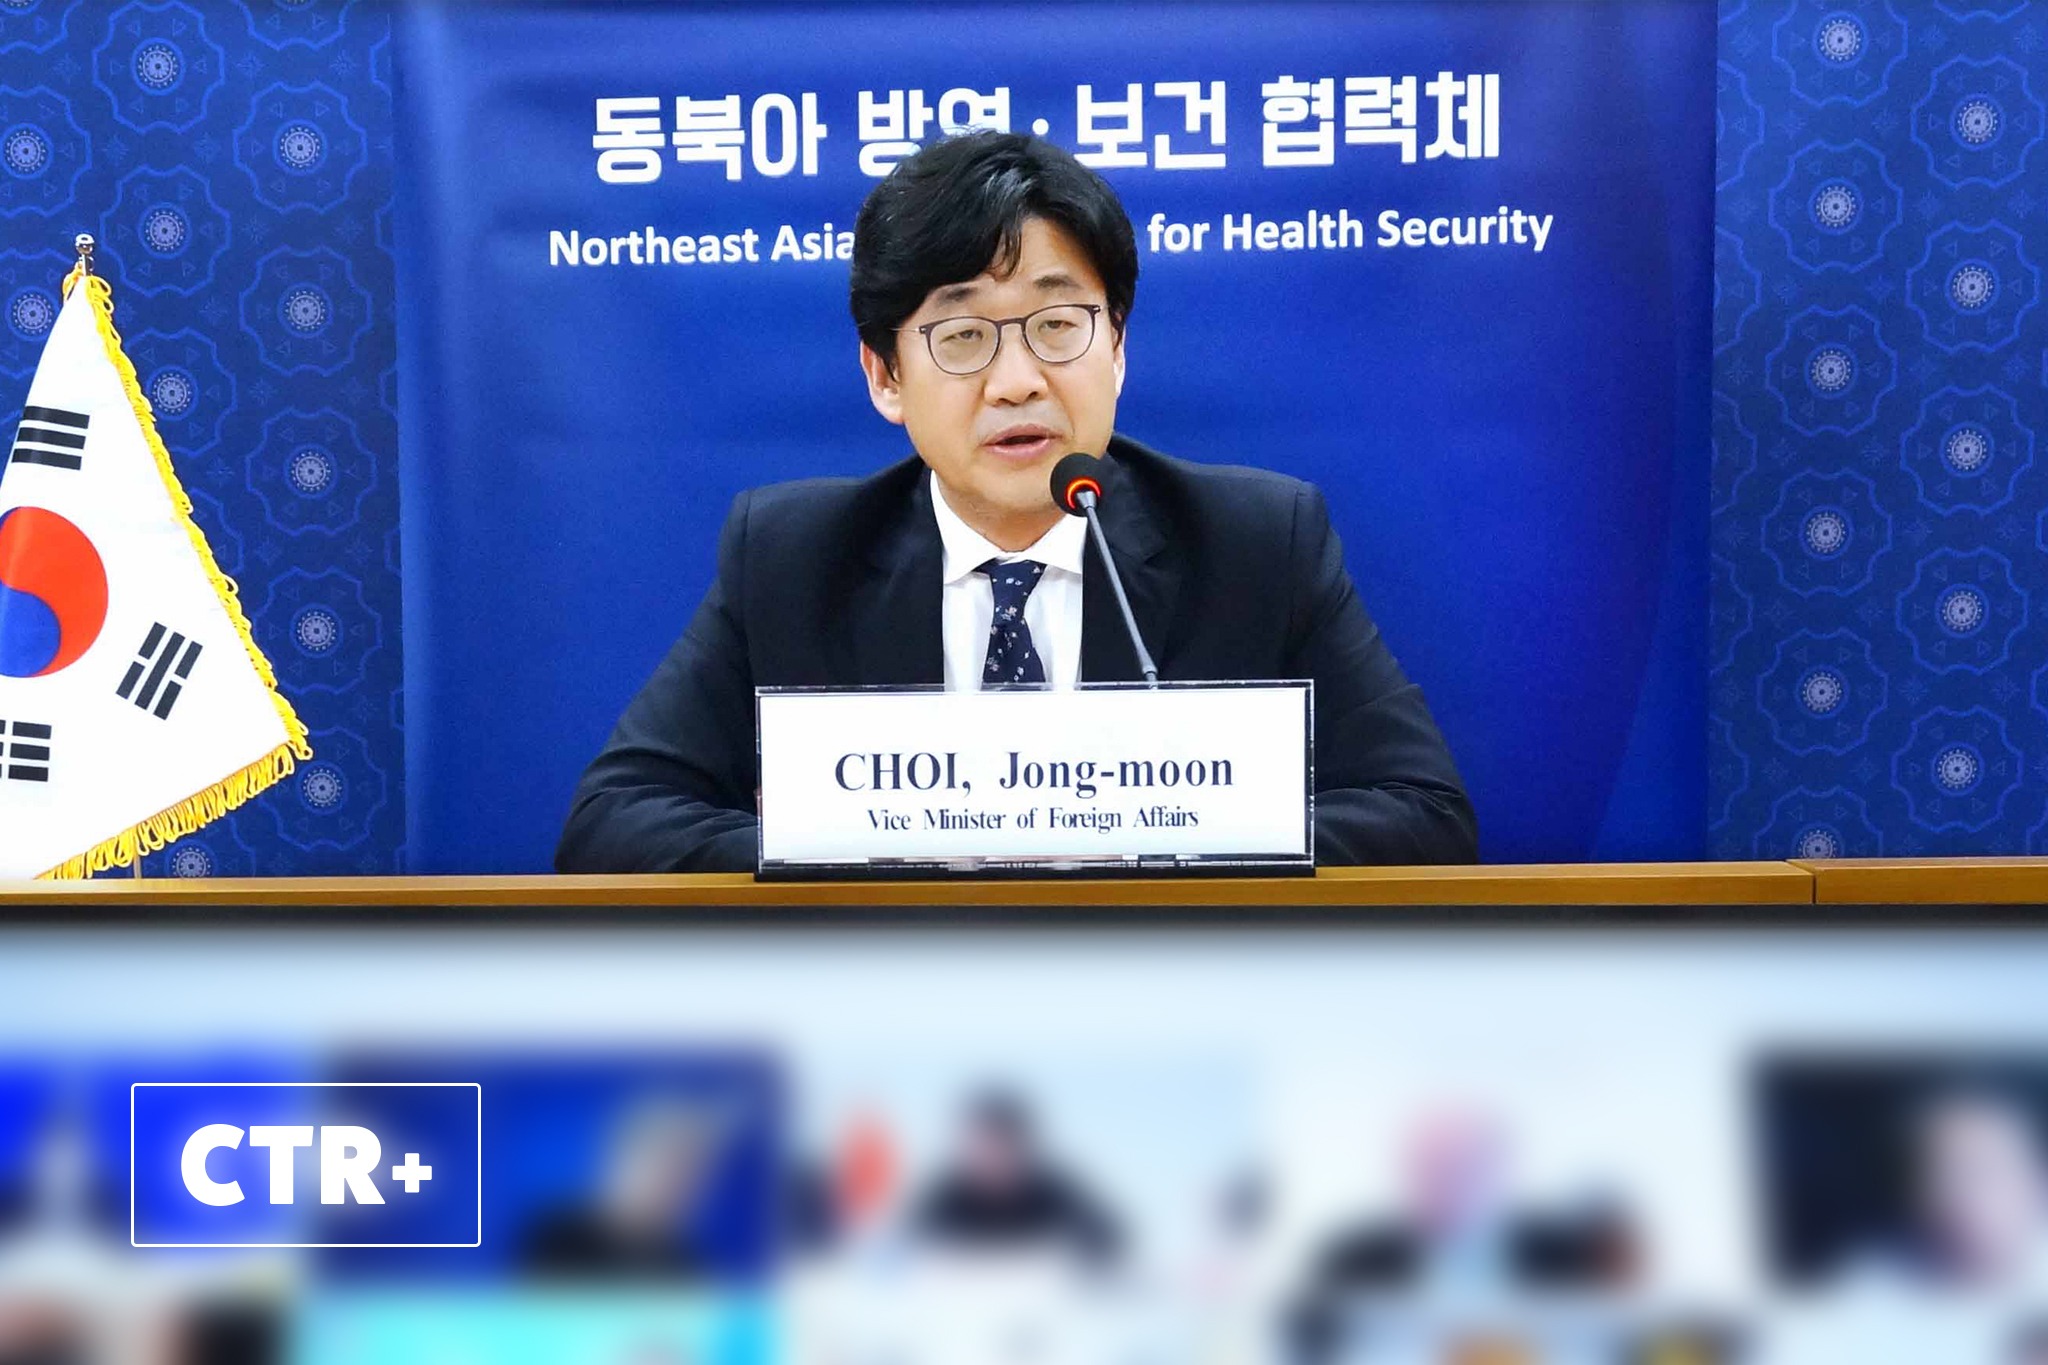 [Special Report] Inter-Korean Cooperation Through NEAPHI